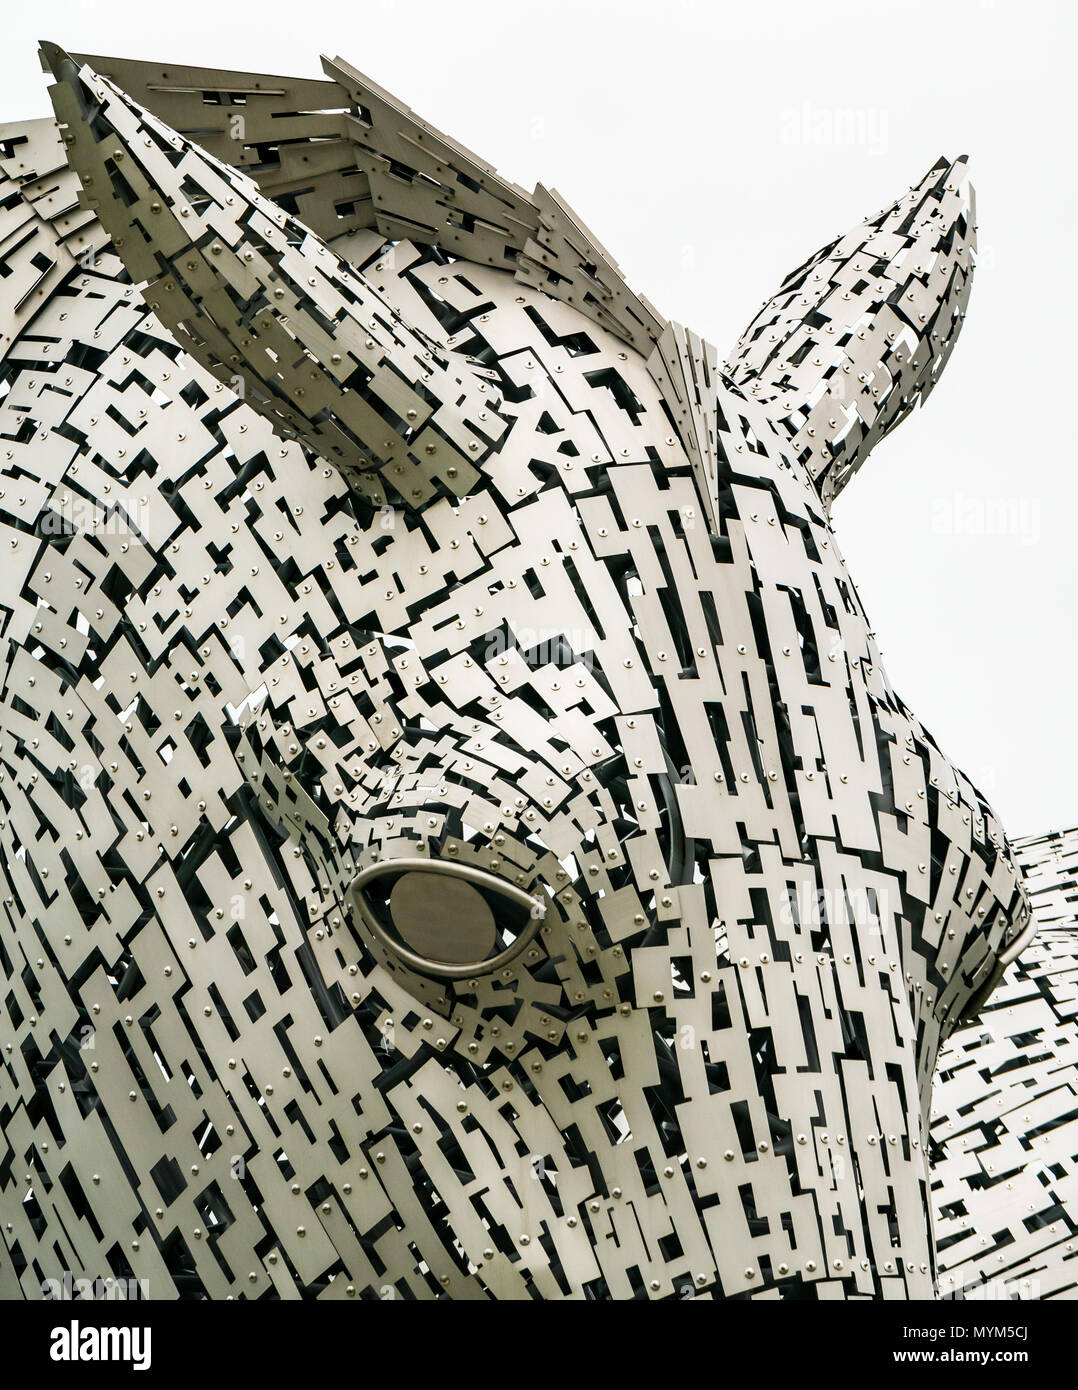 Nahaufnahme der komplexen Kopfskulptur von Metallarbeiten von Kelpie von Andy Scott, Helix Park, Falkirk, Schottland, Großbritannien Stockfoto